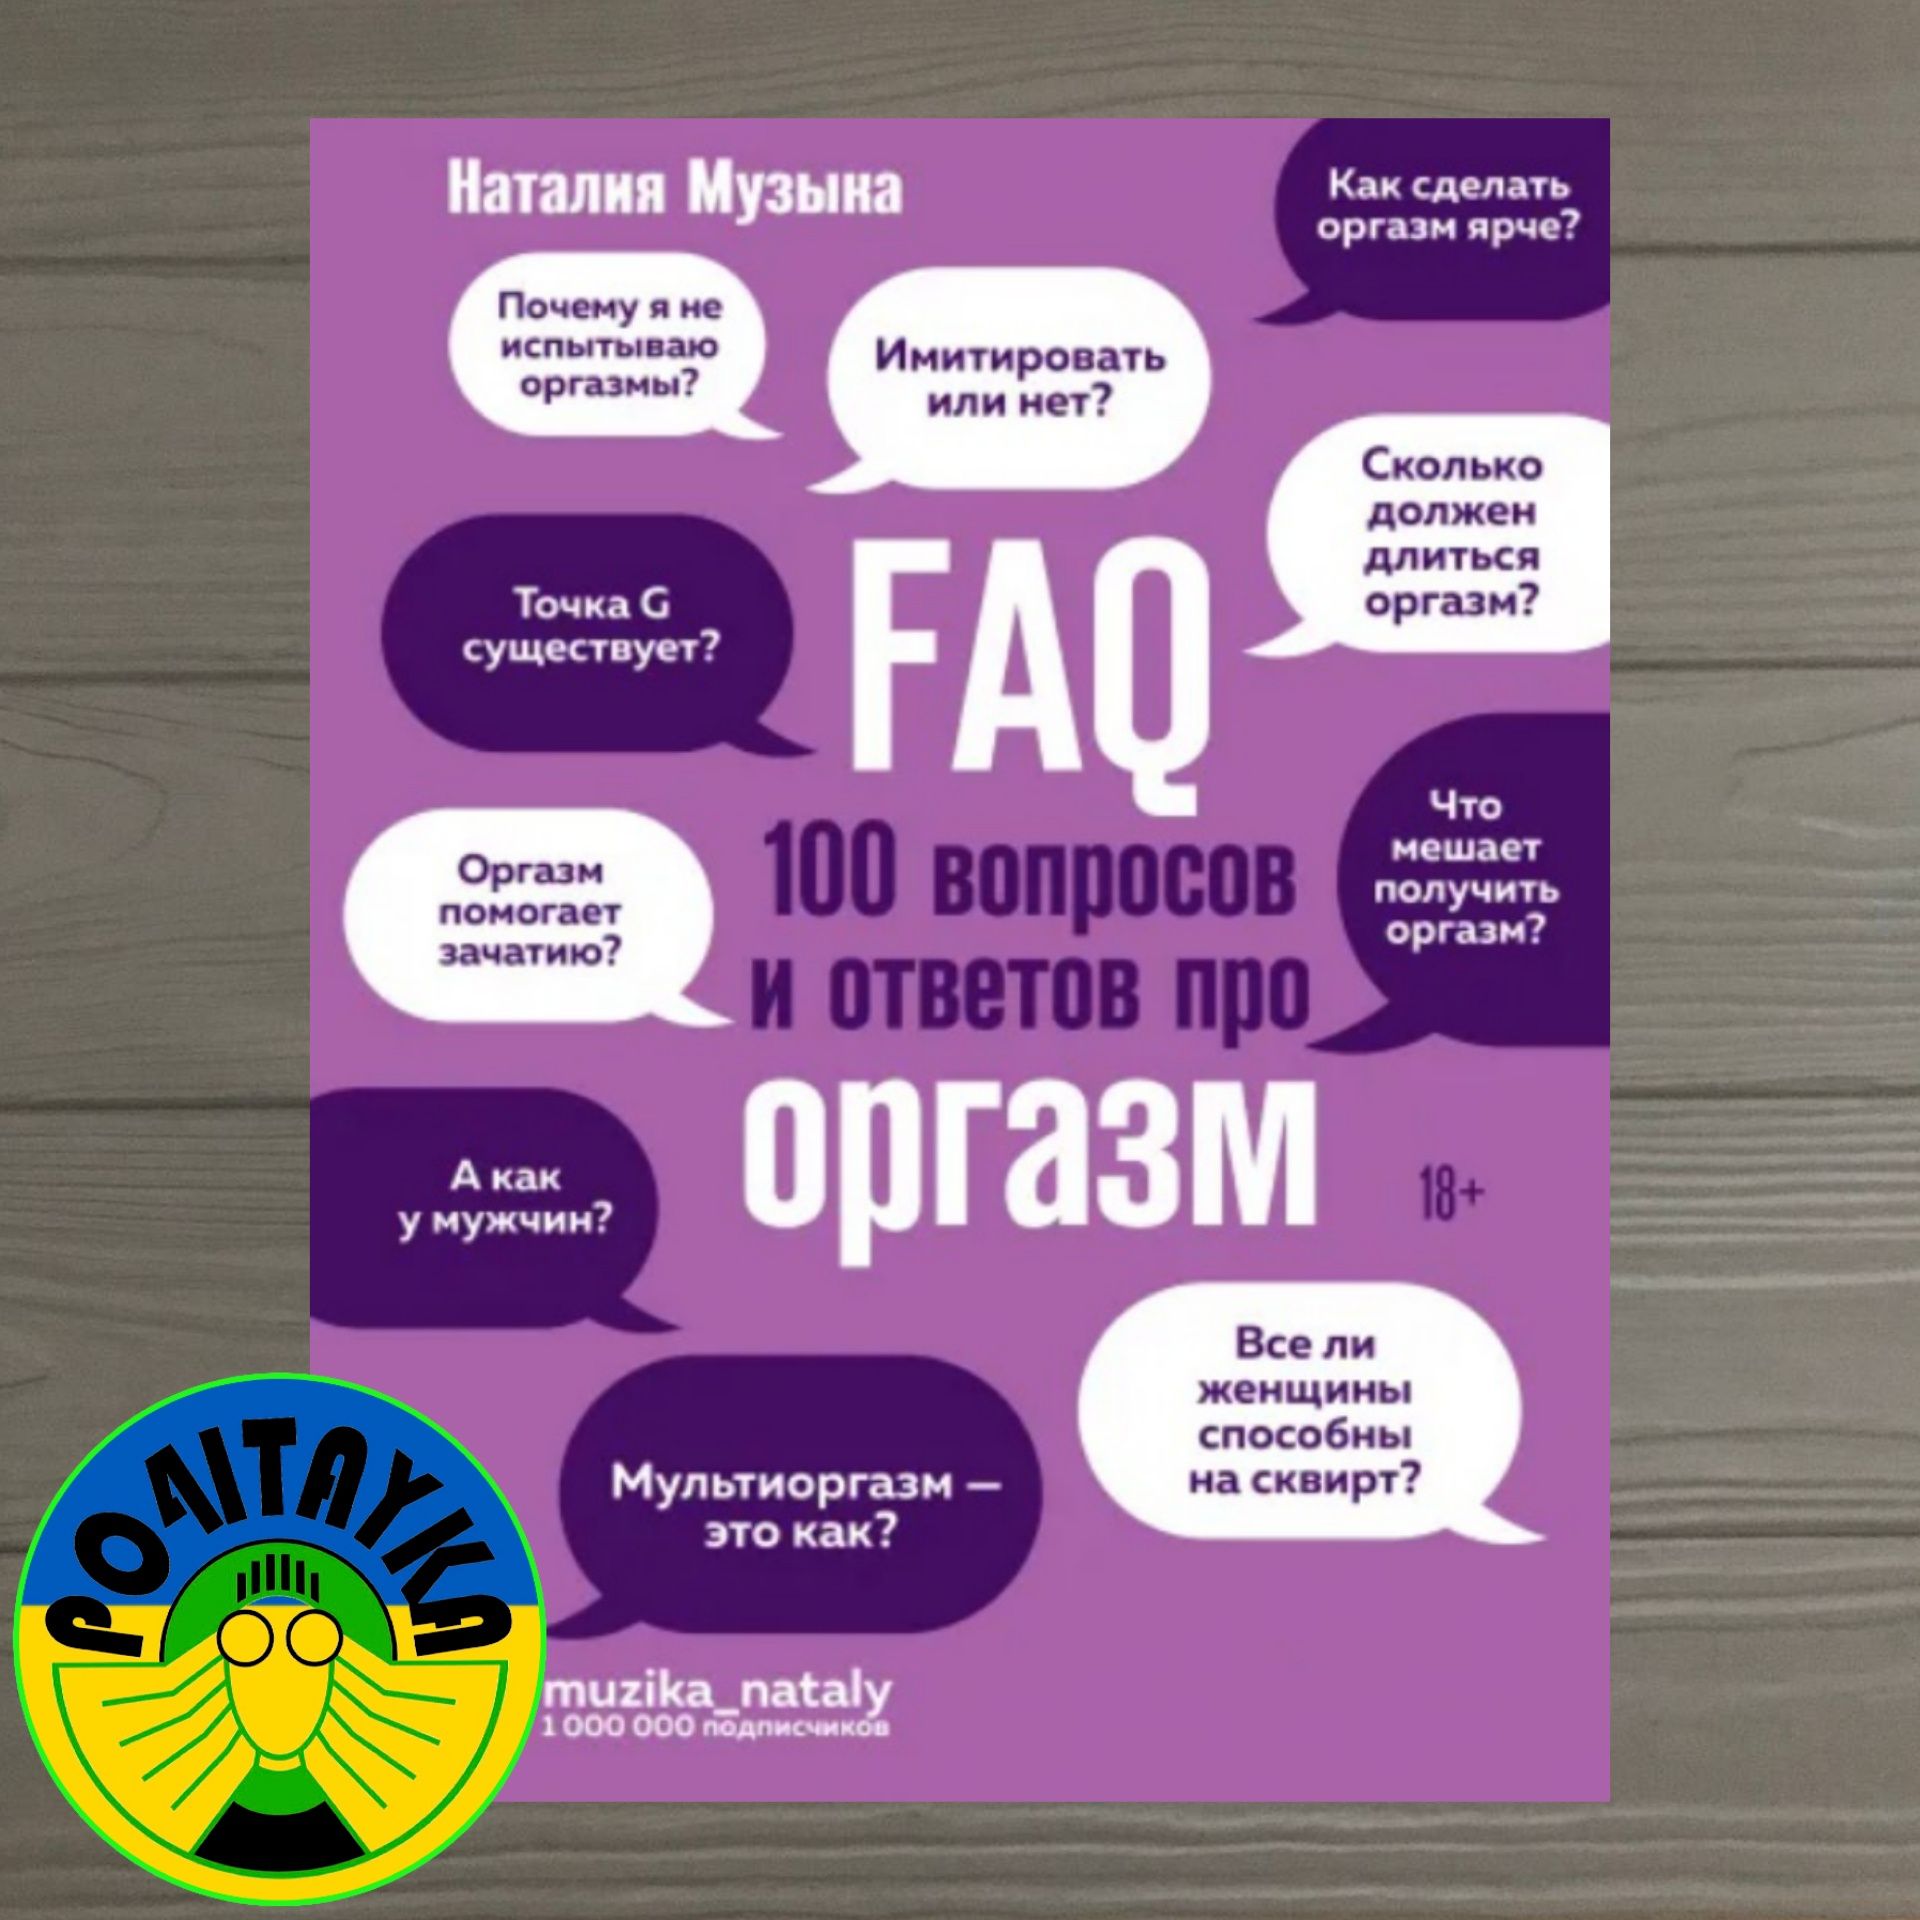 Наталия Музыка FAQ. 100 вопросов и ответов про оргазм